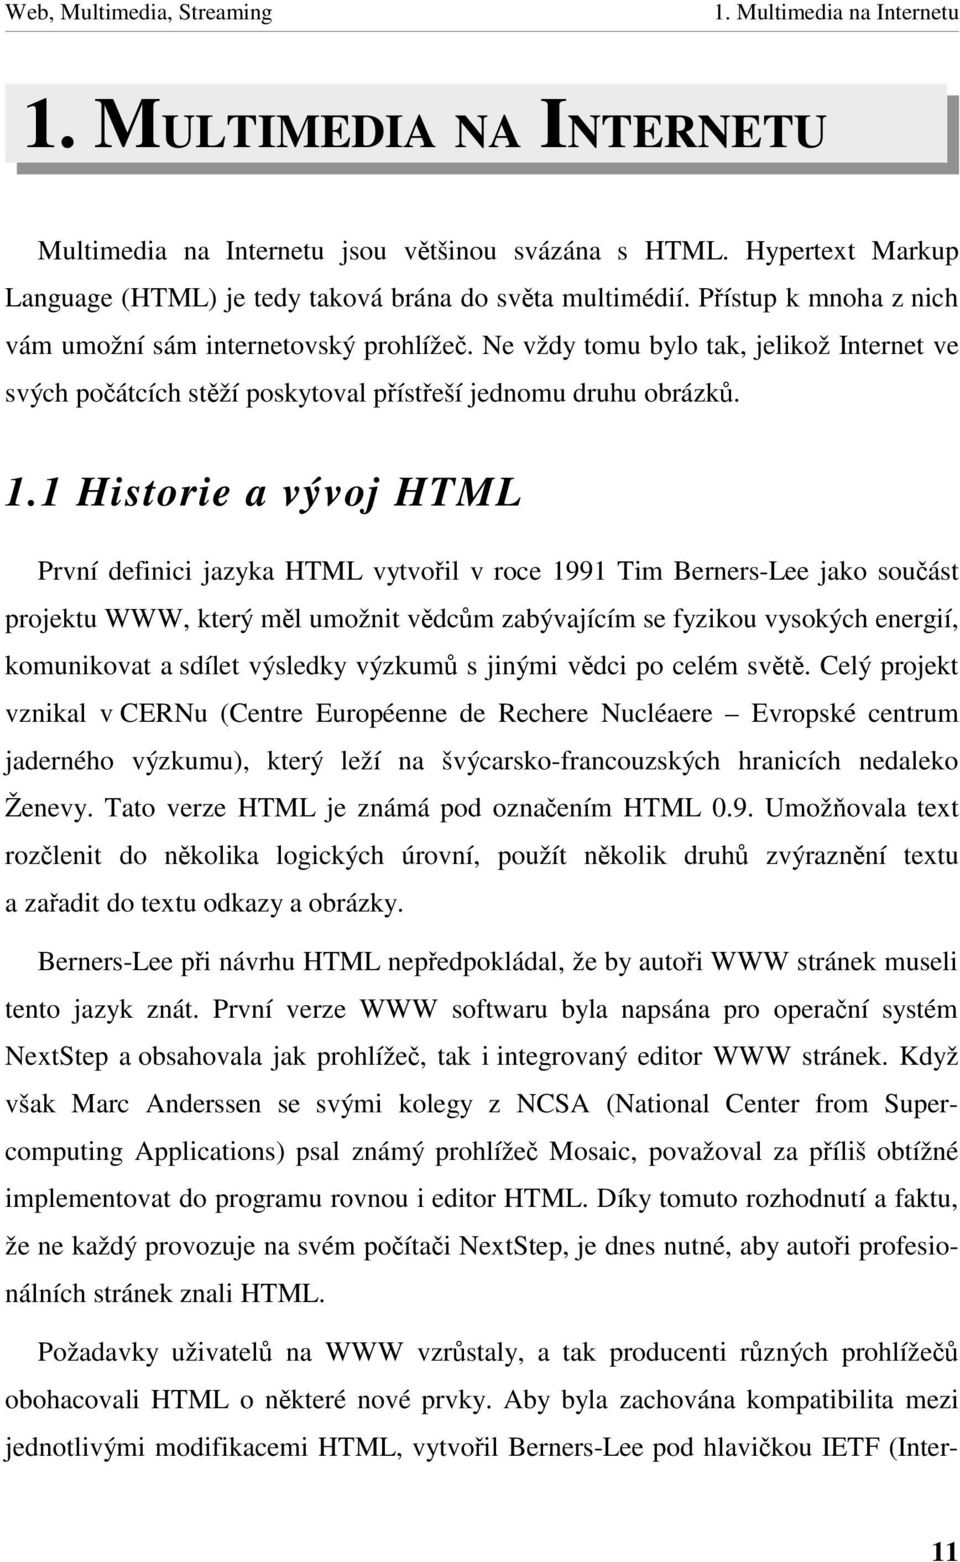 1 Historie a vývoj HTML První definici jazyka HTML vytvoil v roce 1991 Tim Berners-Lee jako souást projektu WWW, který ml umožnitvdcm zabývajícím se fyzikou vysokých energií, komunikovat a sdílet